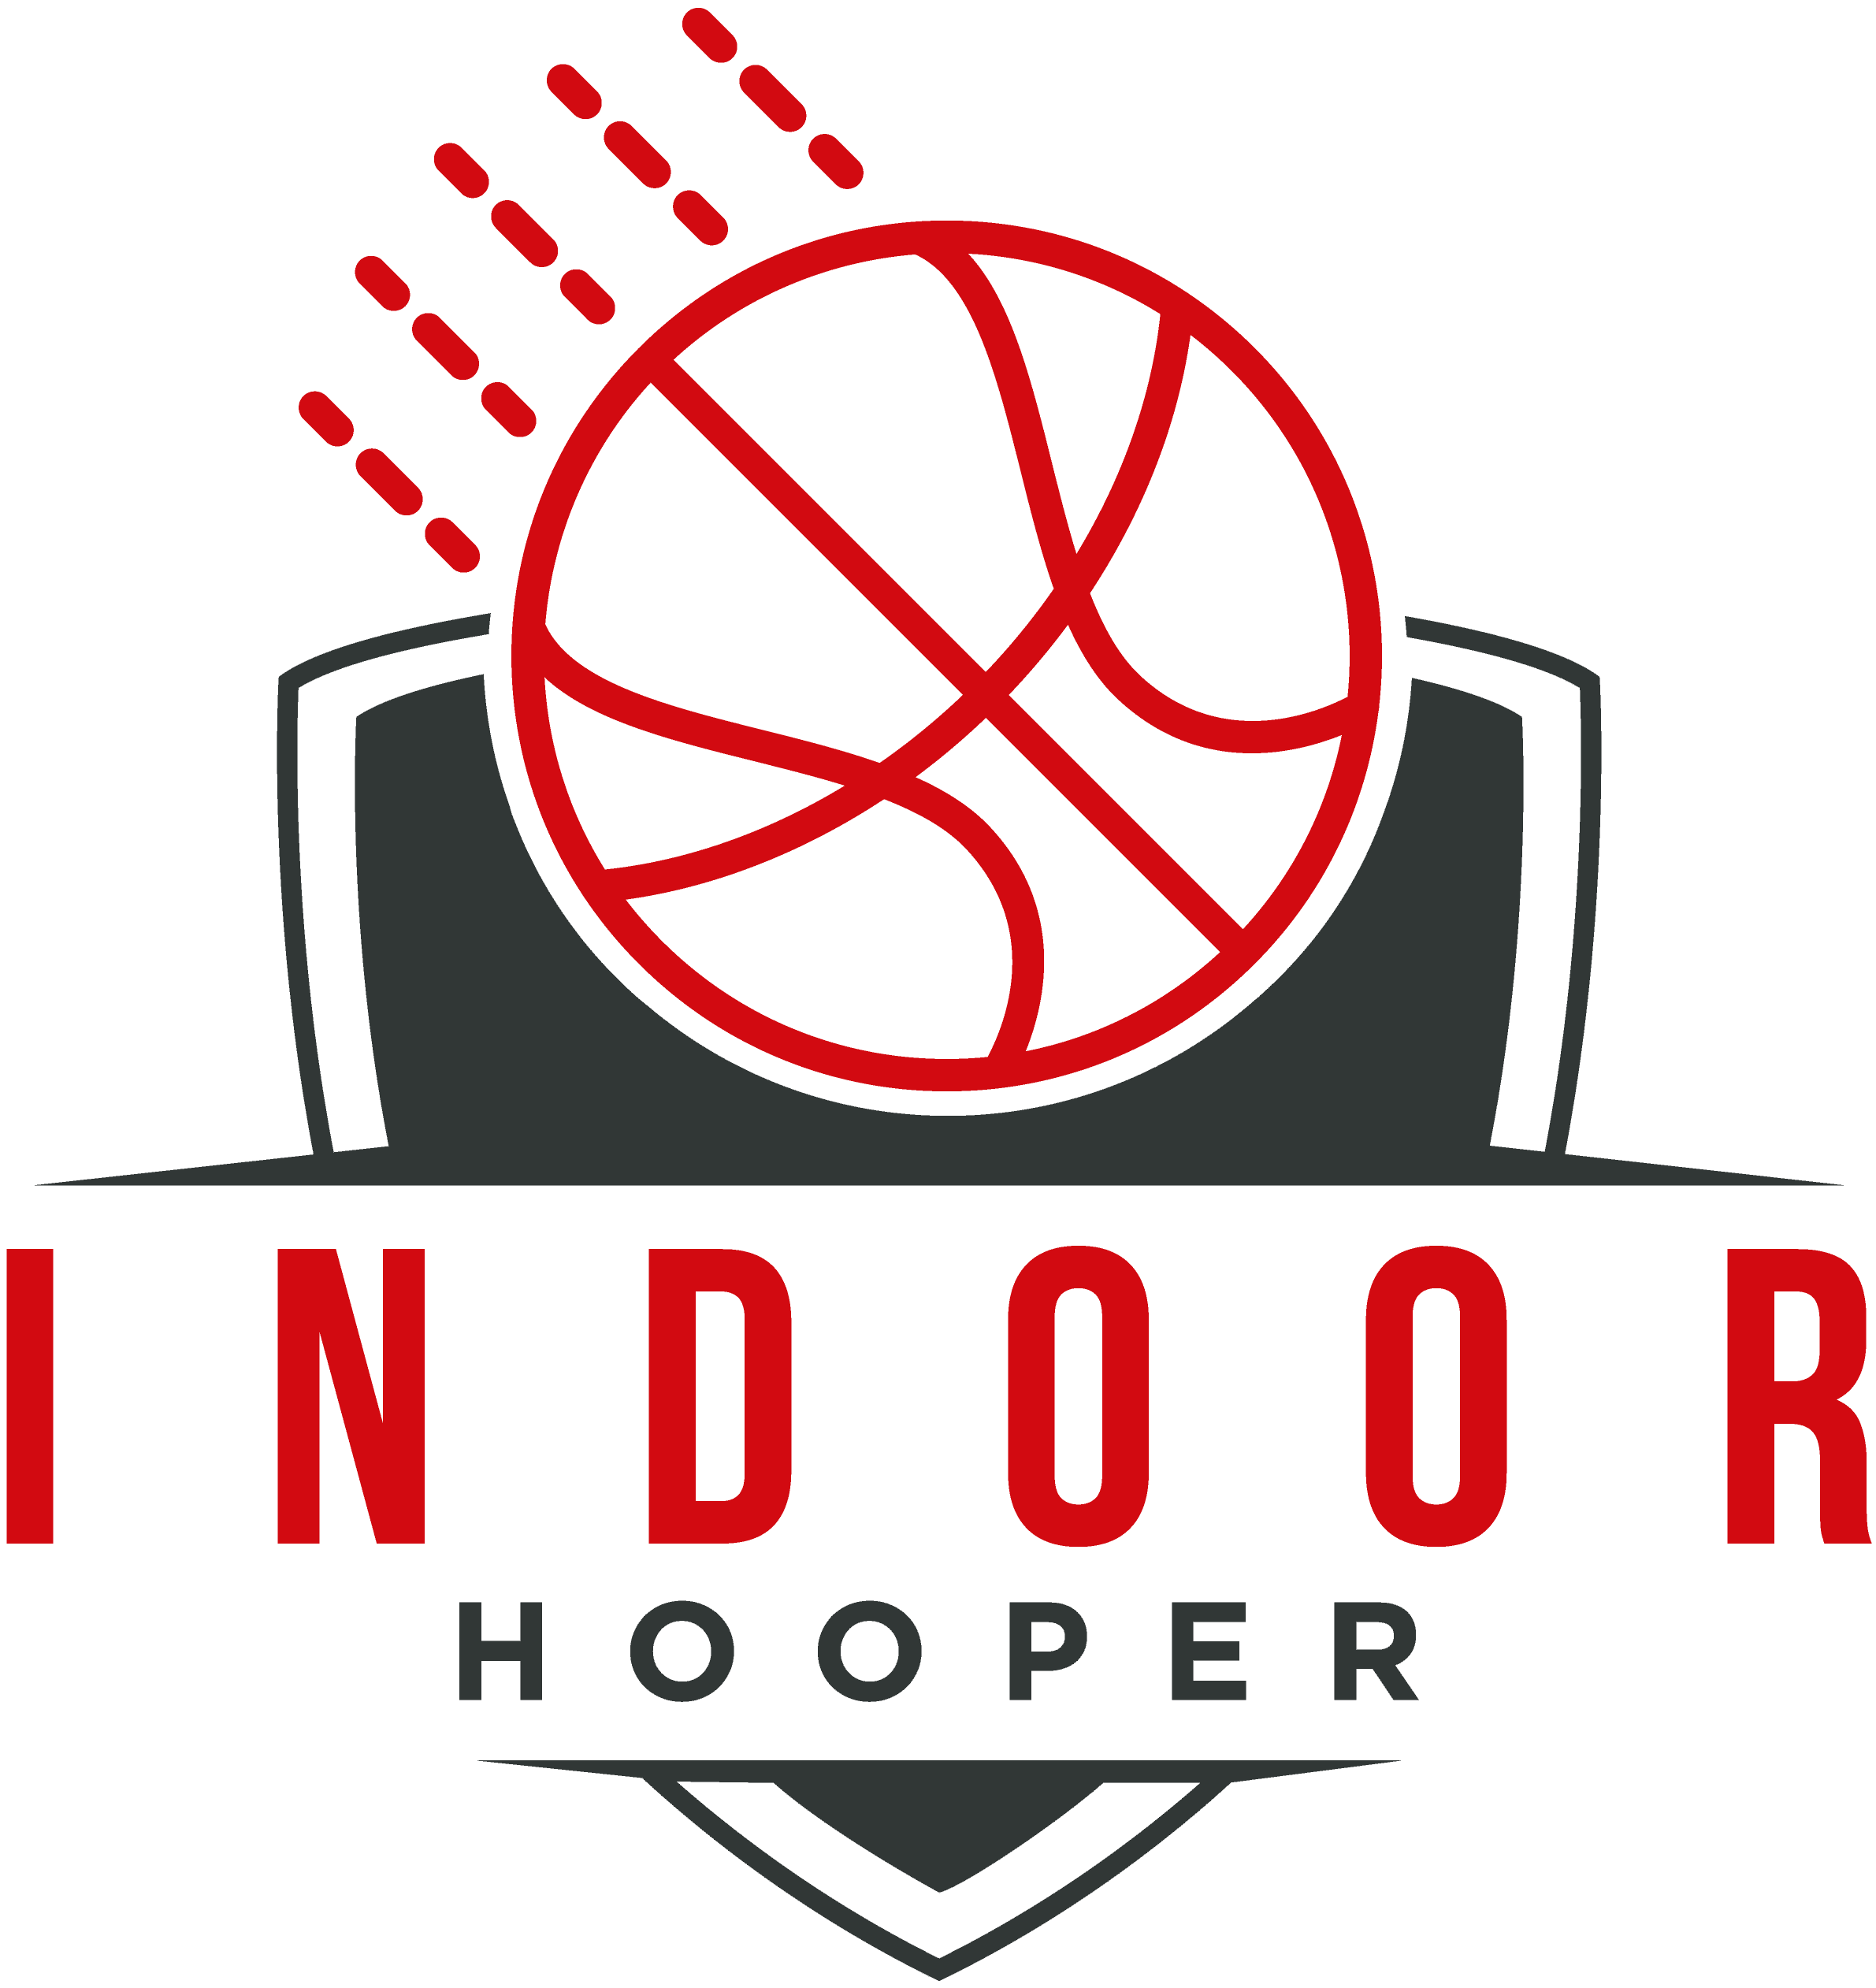 Elite X9 Mini Basketball Hoop - Wall Mounted – IndoorHooper